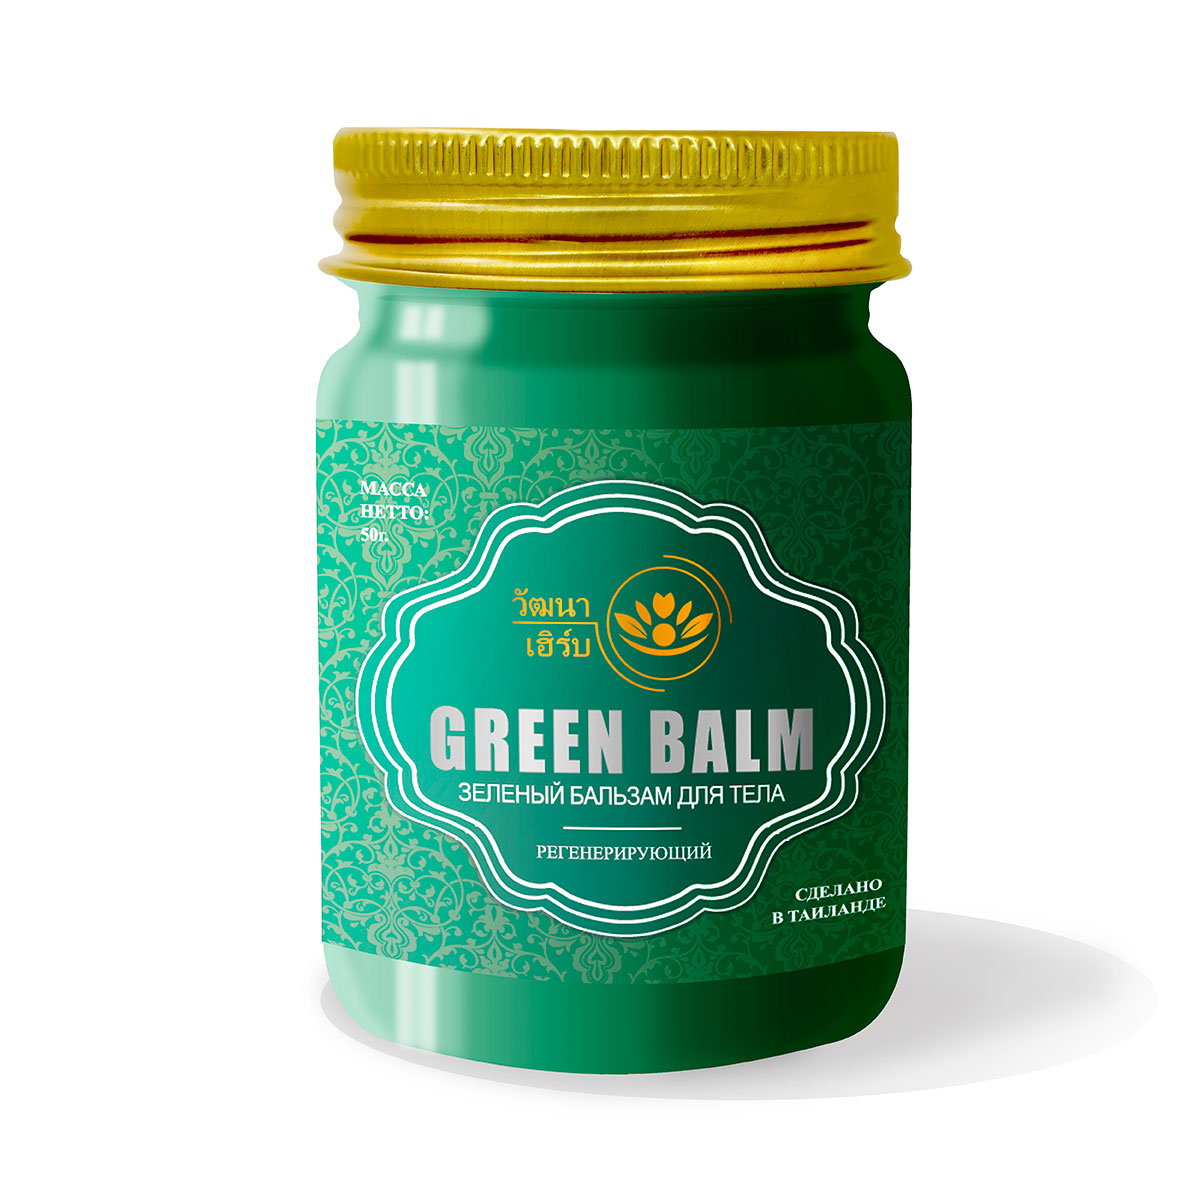 Купить Тайский Зеленый бальзам для тела регенерирующий Wattana Herb, 50гр.